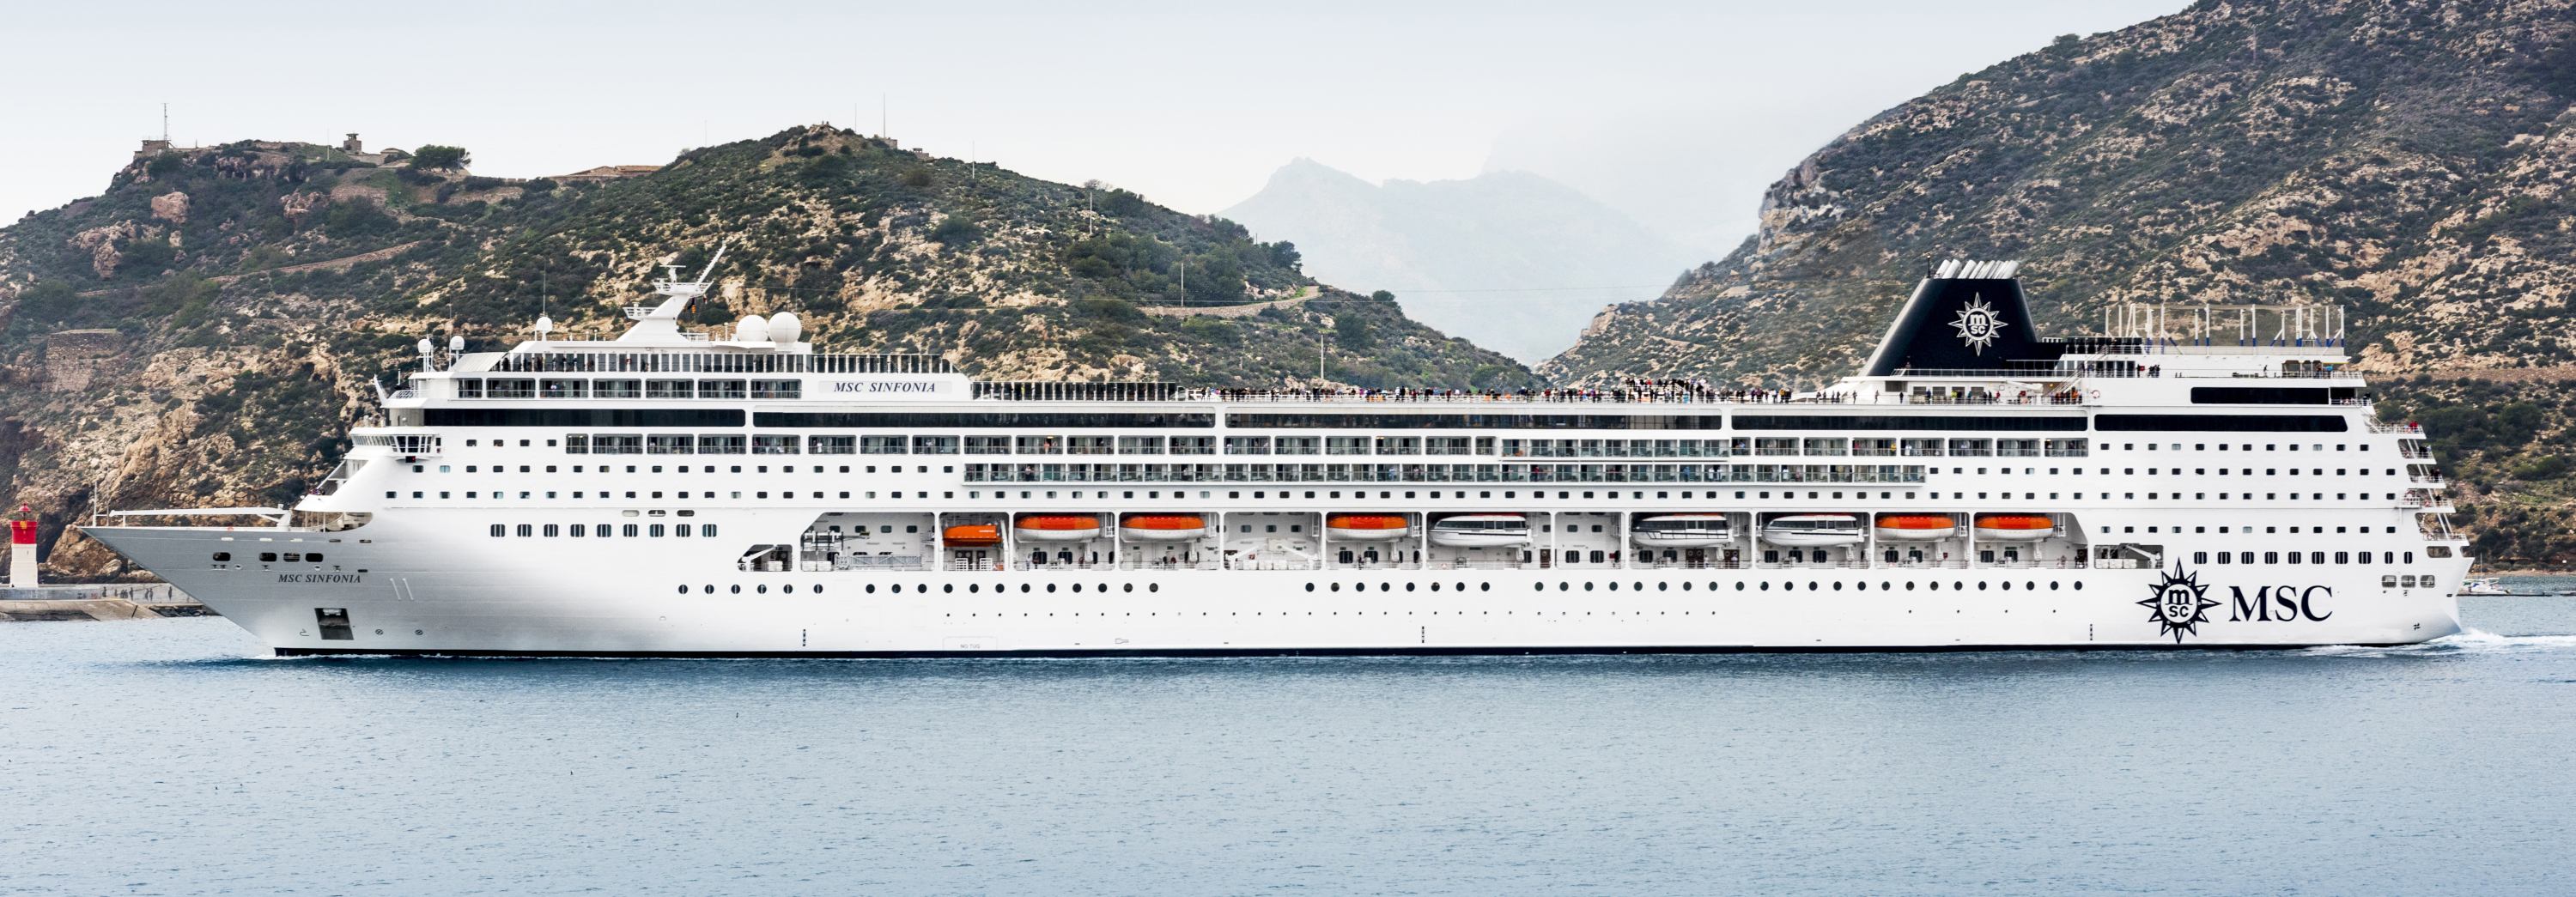 Mykonos & Italy Cruise on MSC Sinfonia